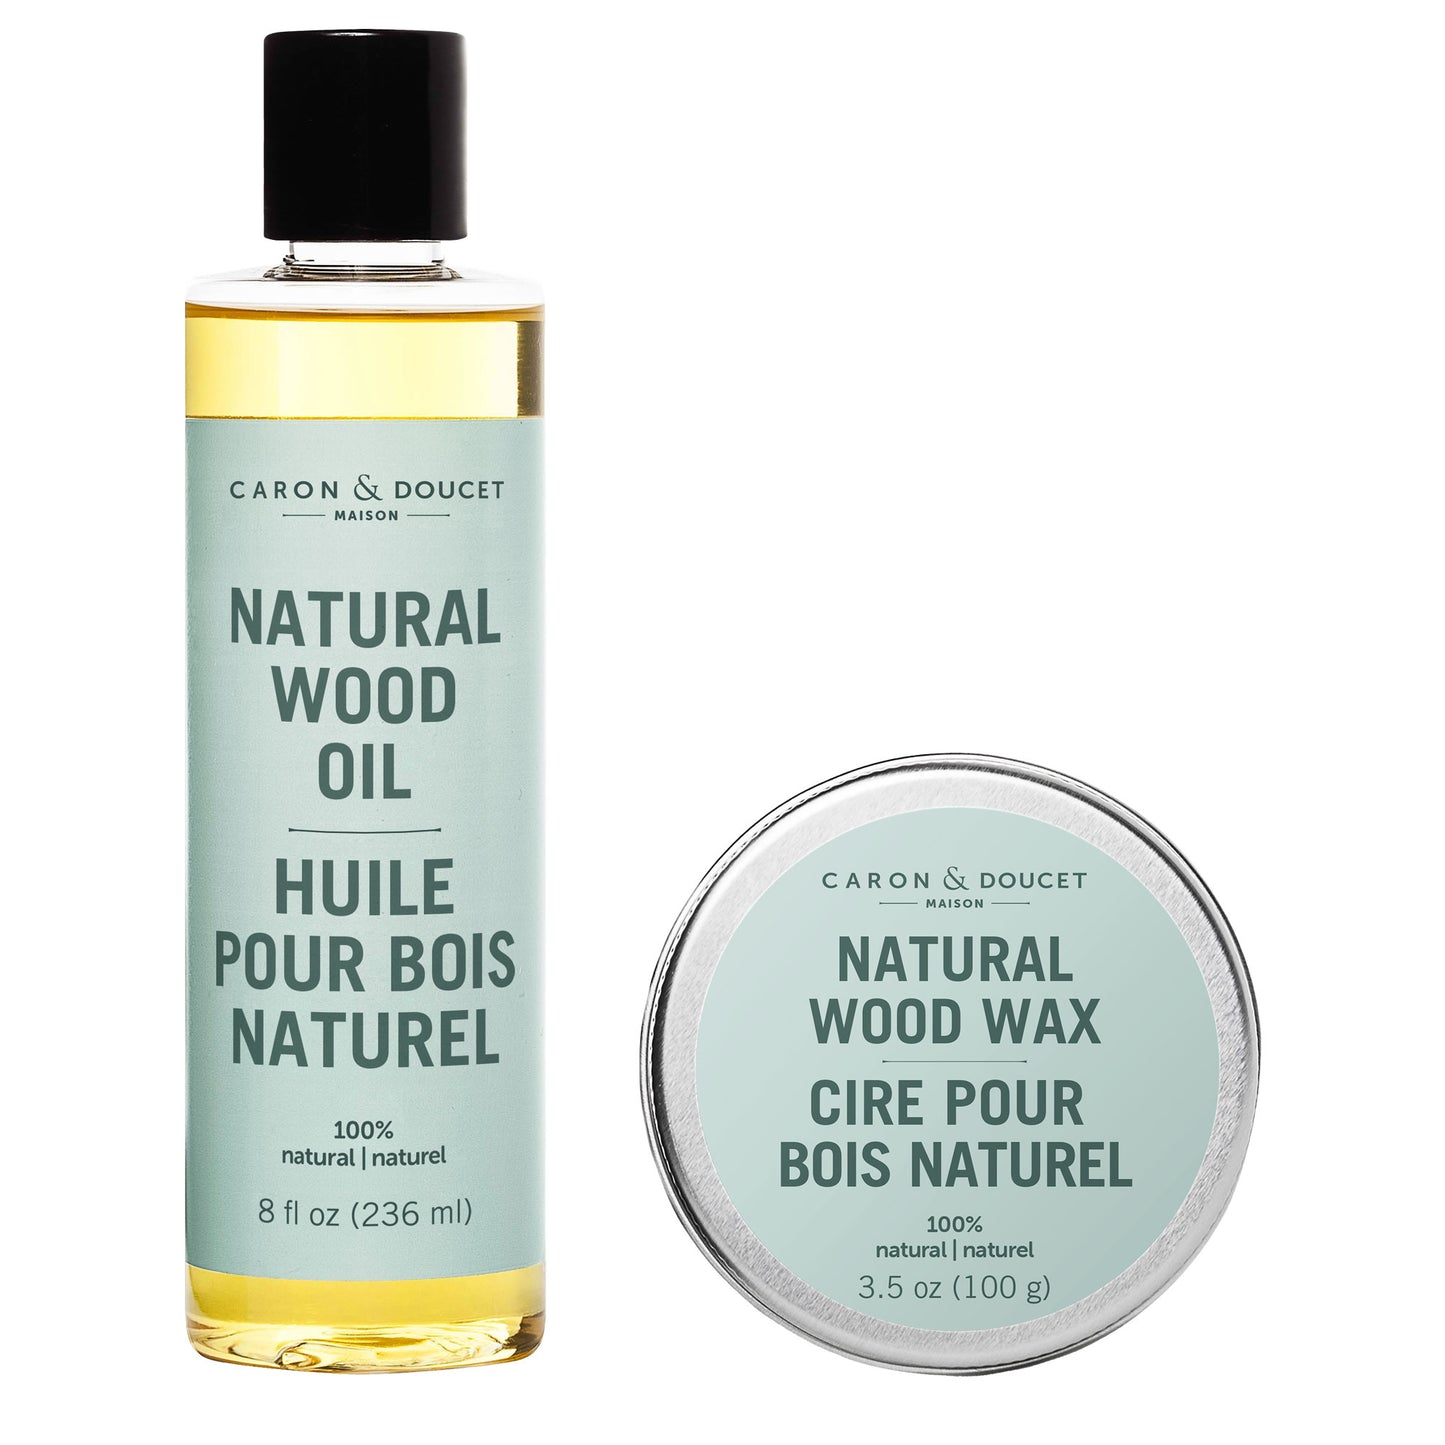 Caron & Doucet Natural Wood Oil and Wax Bundle